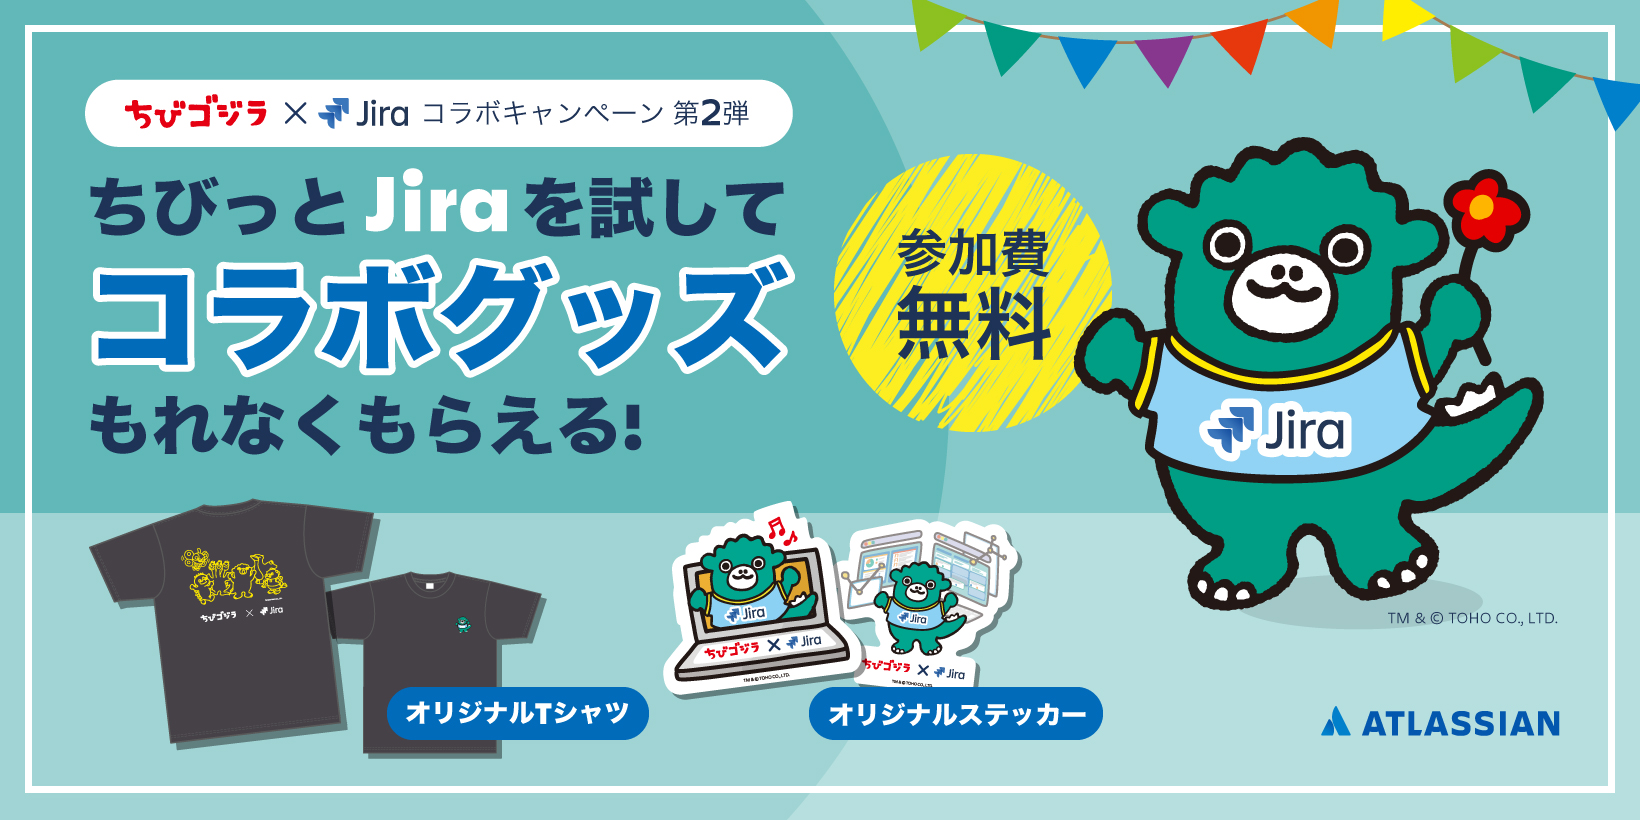 ちび っとjiraでパーティー計画 Atlassian Japan 公式ブログ アトラシアン株式会社